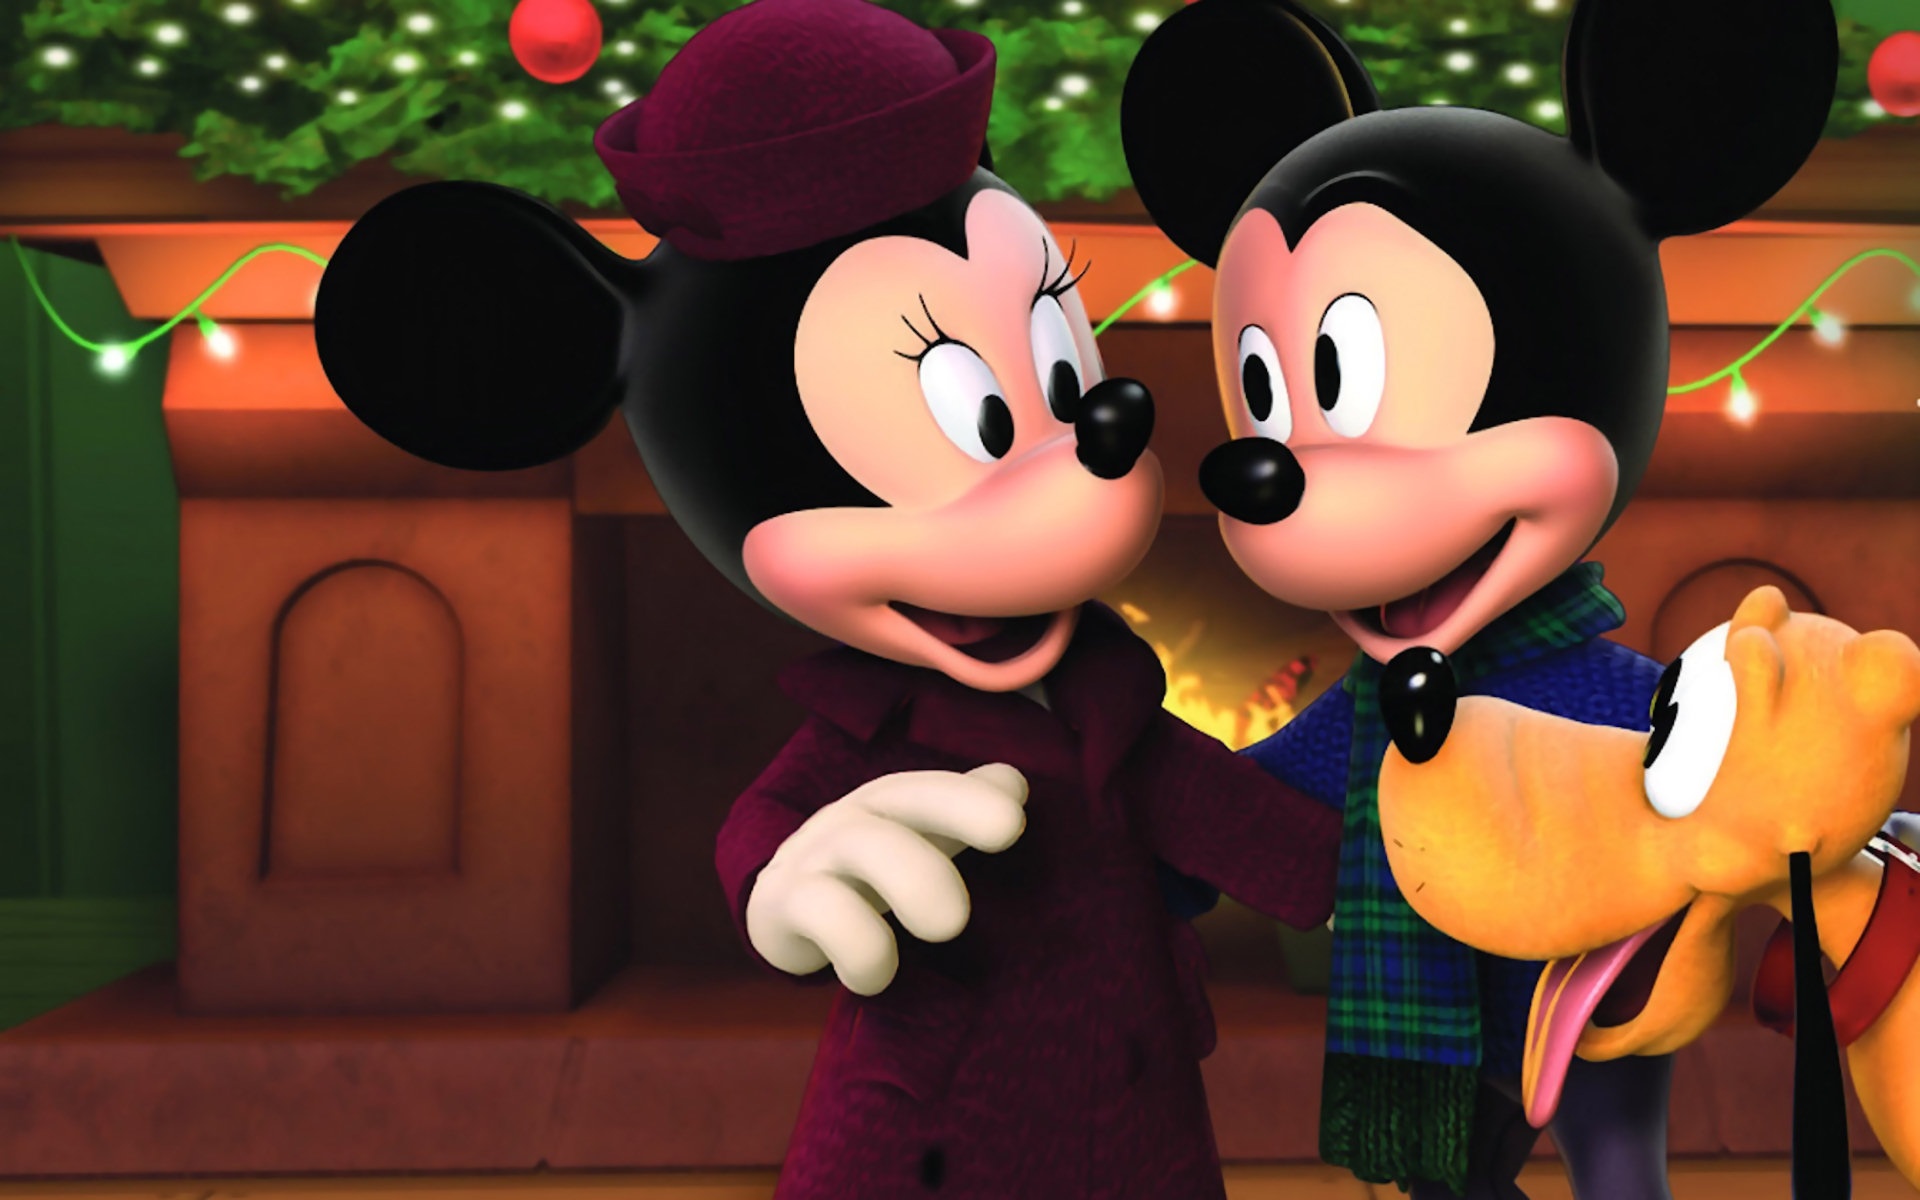 Hình ảnh chuột Mickey đáng yêu dễ thương cho năm Canh Tý - [Kích thước hình ảnh: 1920x1200 px]